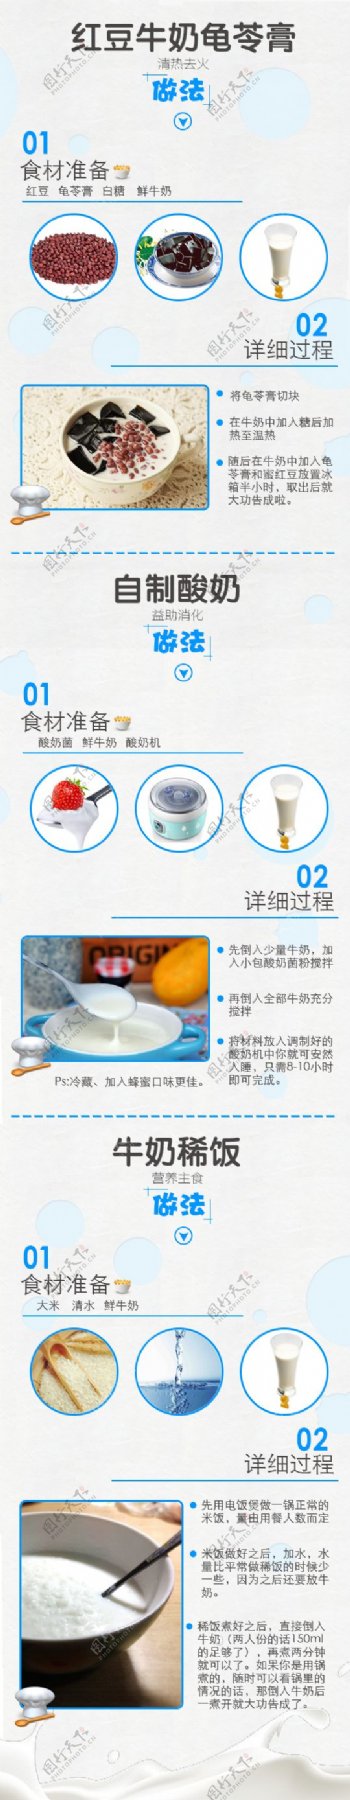 牛奶美食食谱菜谱图片